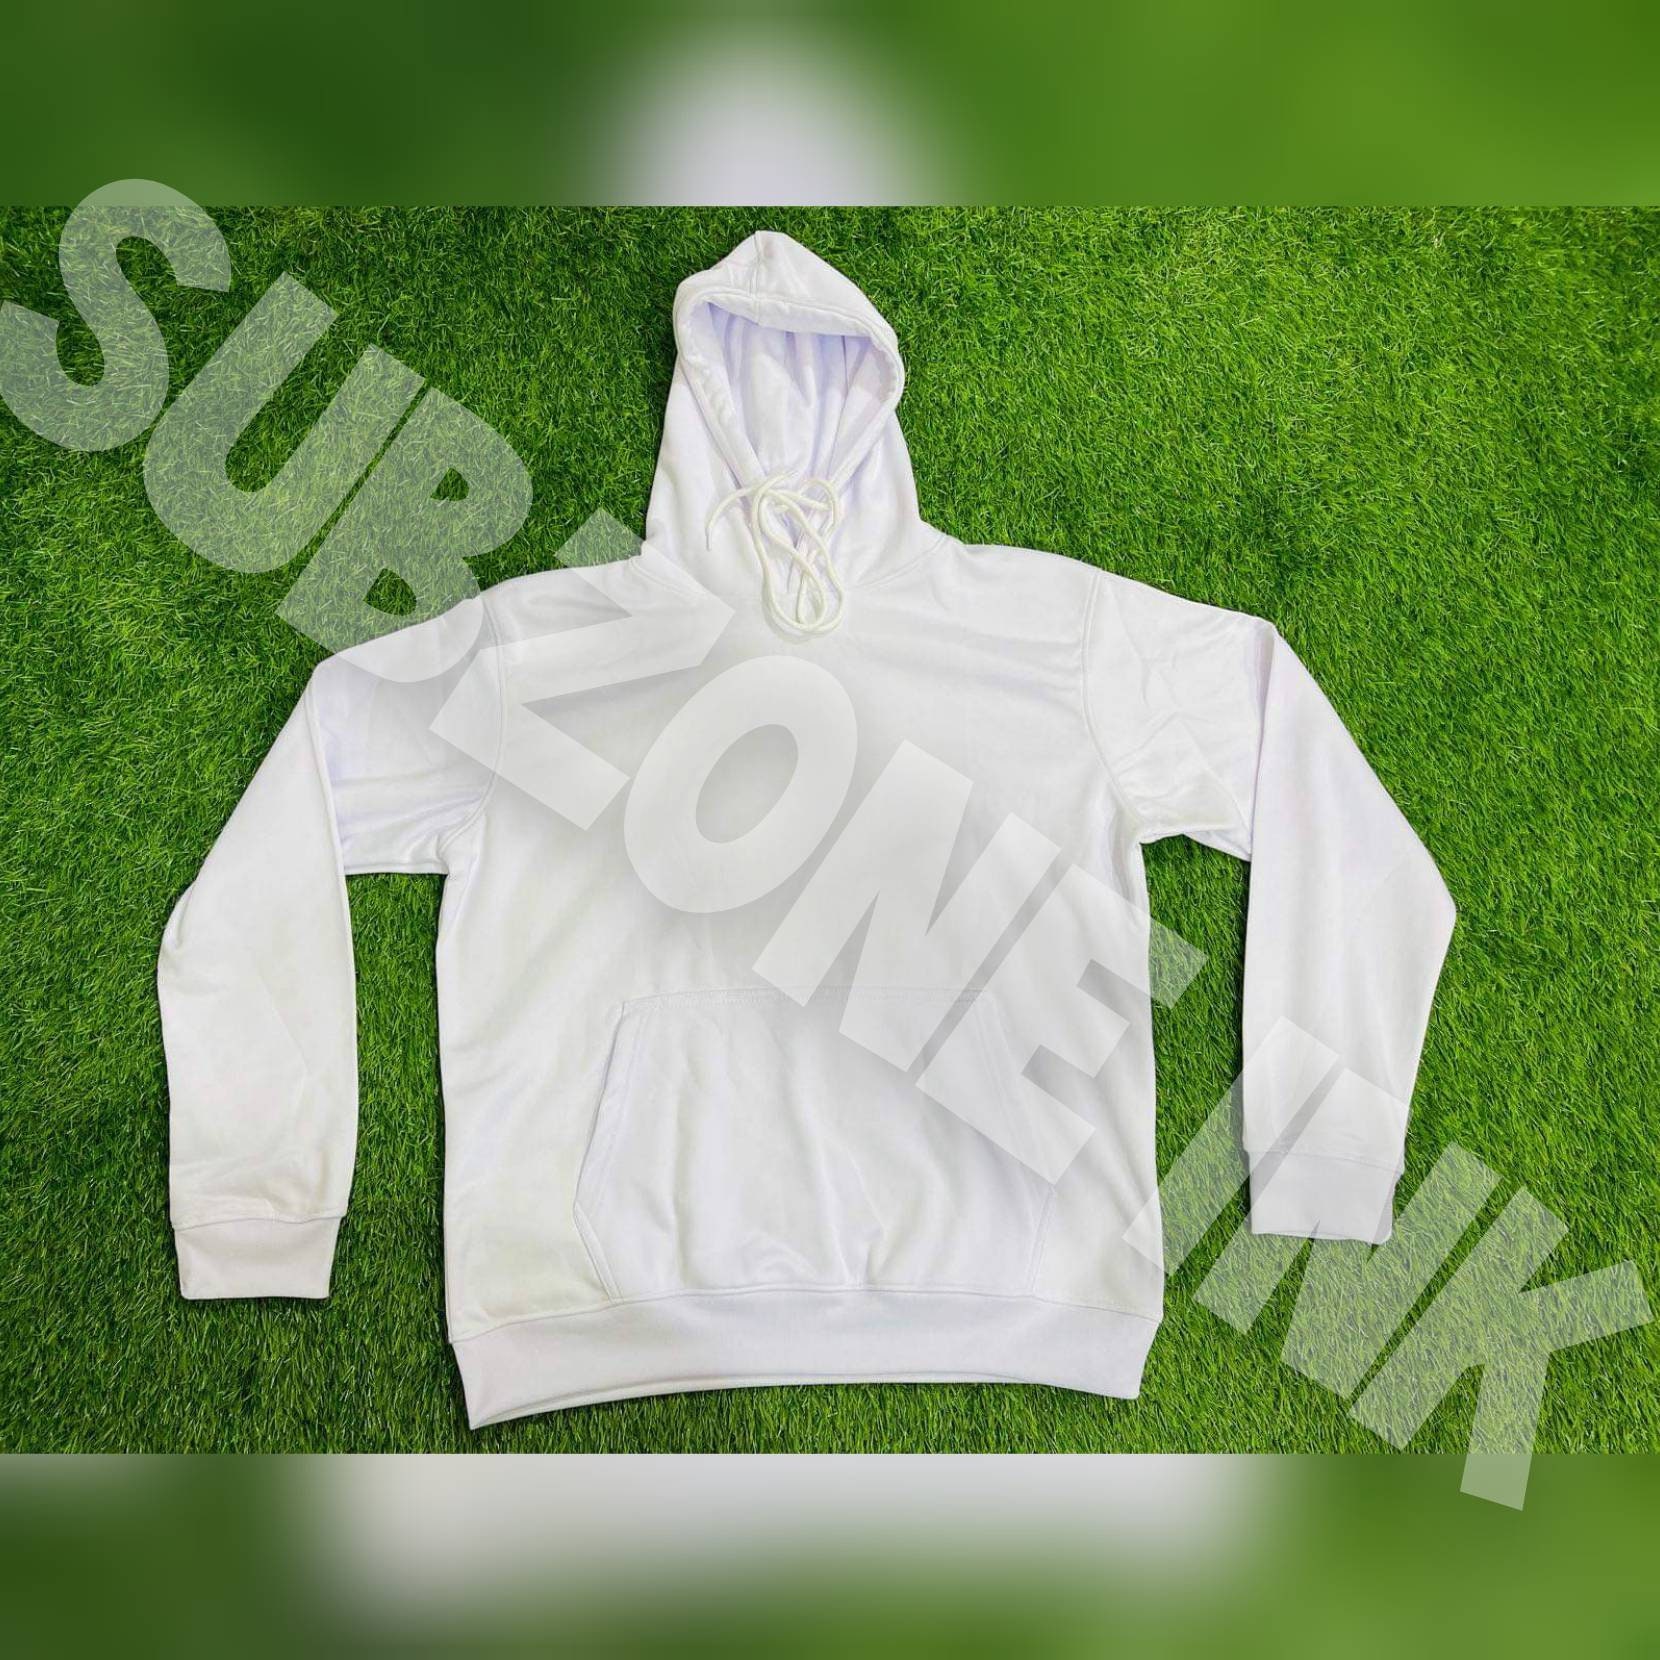 Sublimation Sweatshirt Large / White